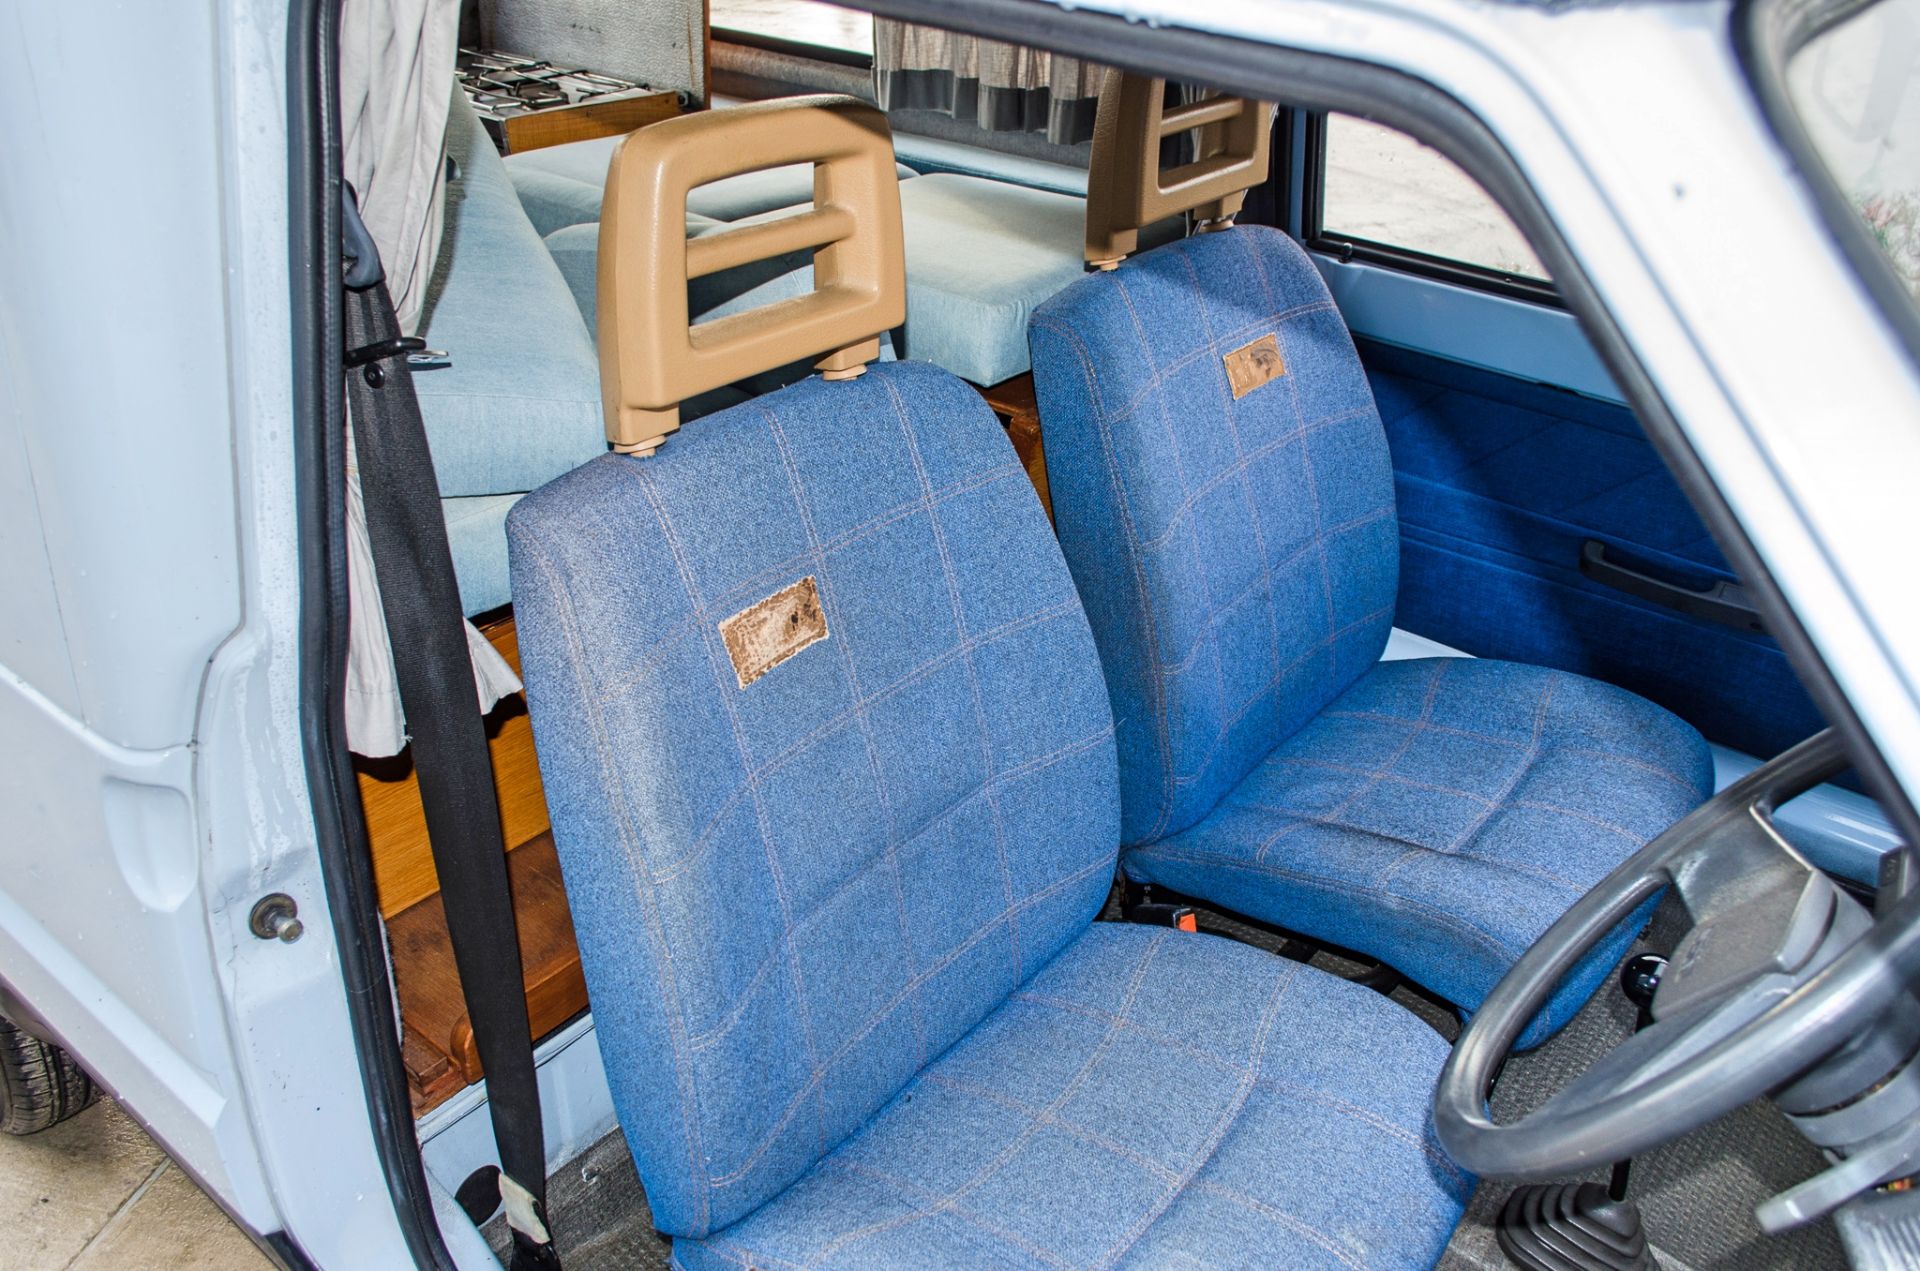 1990 Seat Terra 903cc 2 berth Danbury Motor Caravan - Image 34 of 53